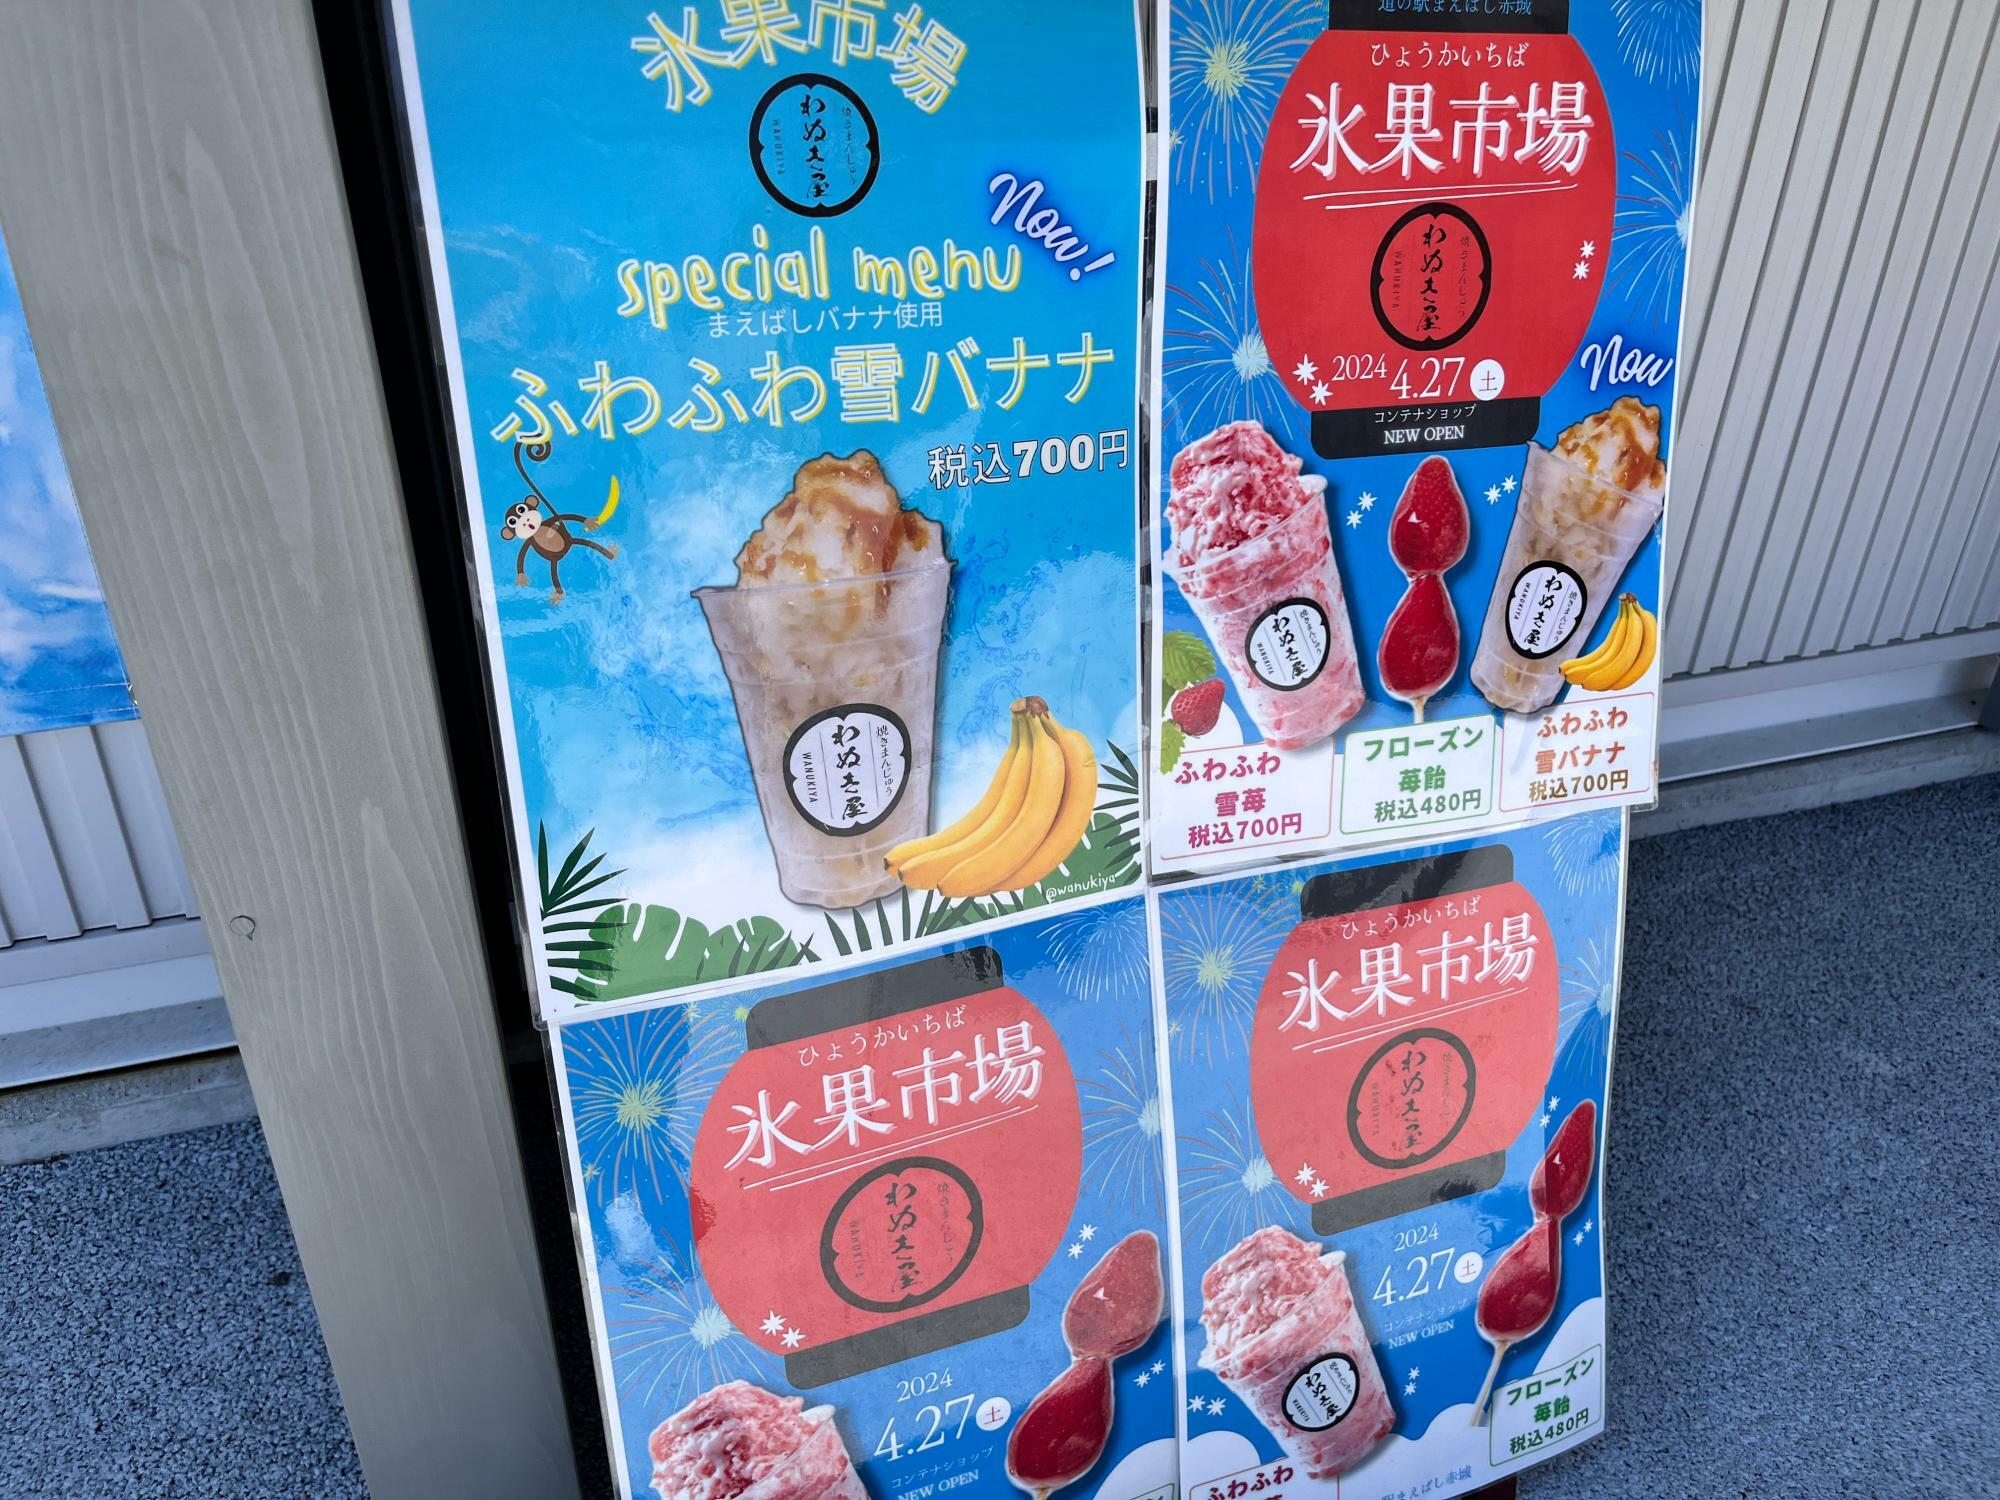 「氷菓市場 わぬき屋」の店頭の掲示